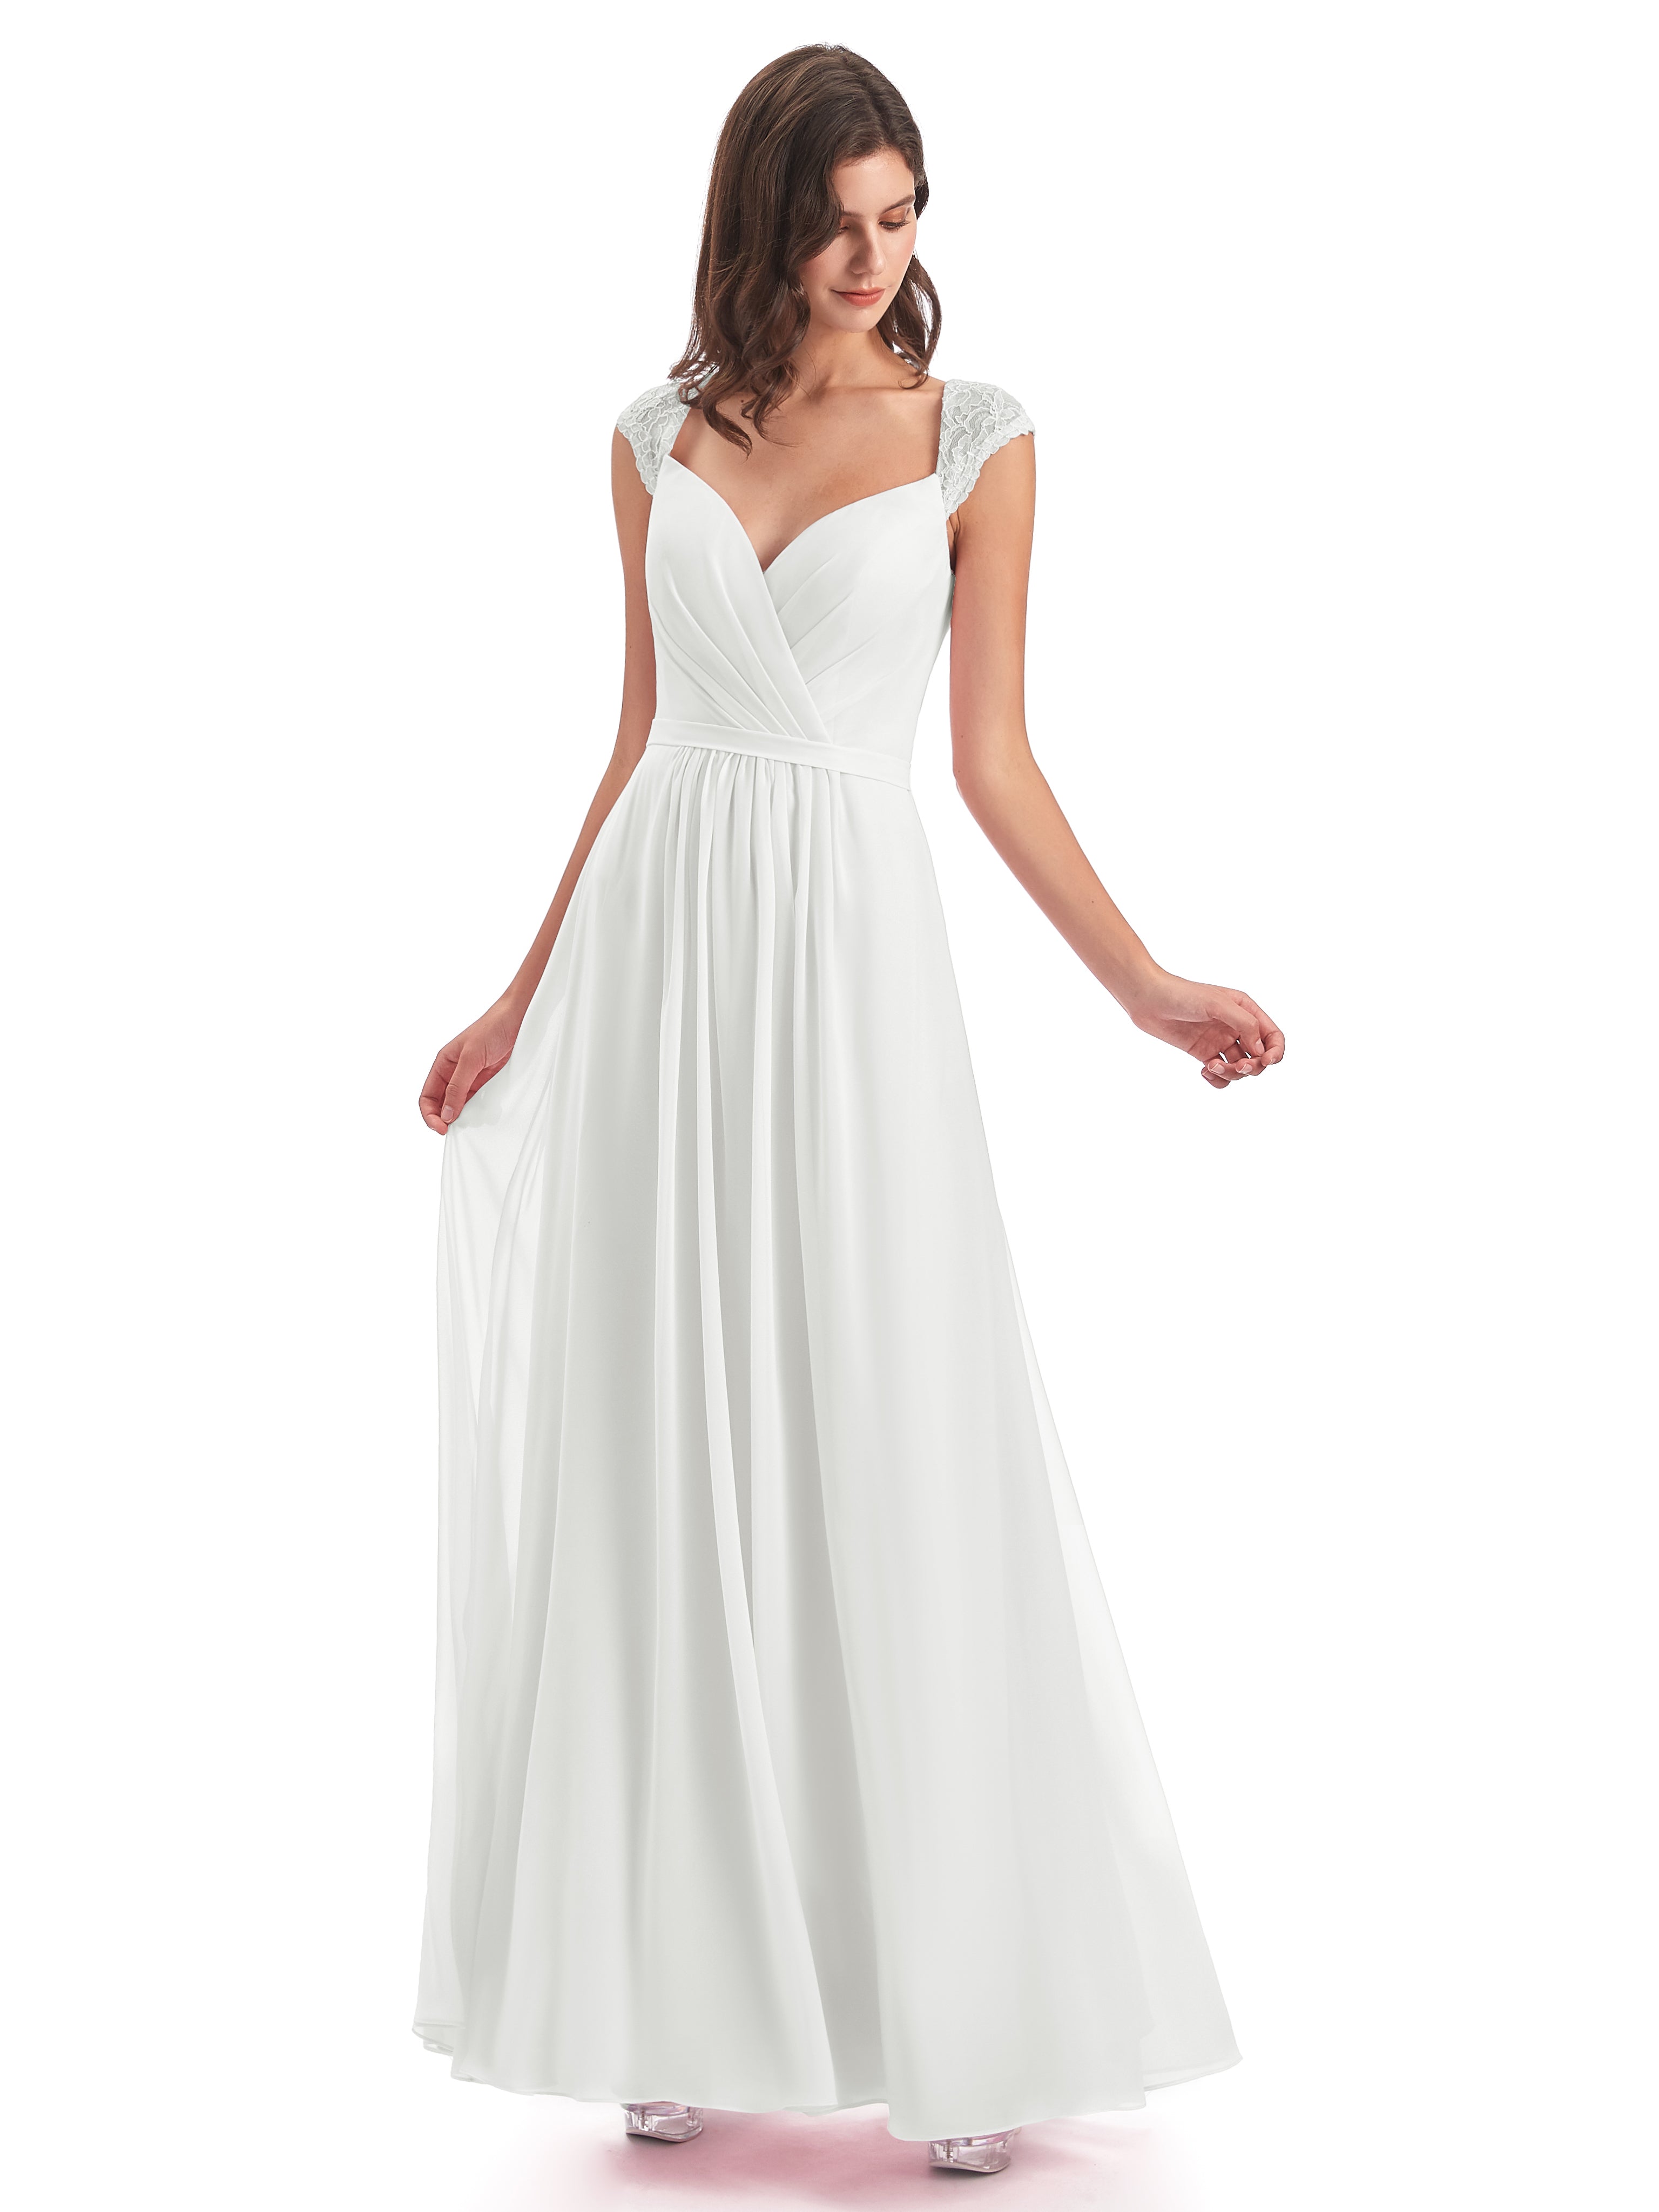 Under $100: High Quality Ivory Bridesmaid Dresses | Cicinia